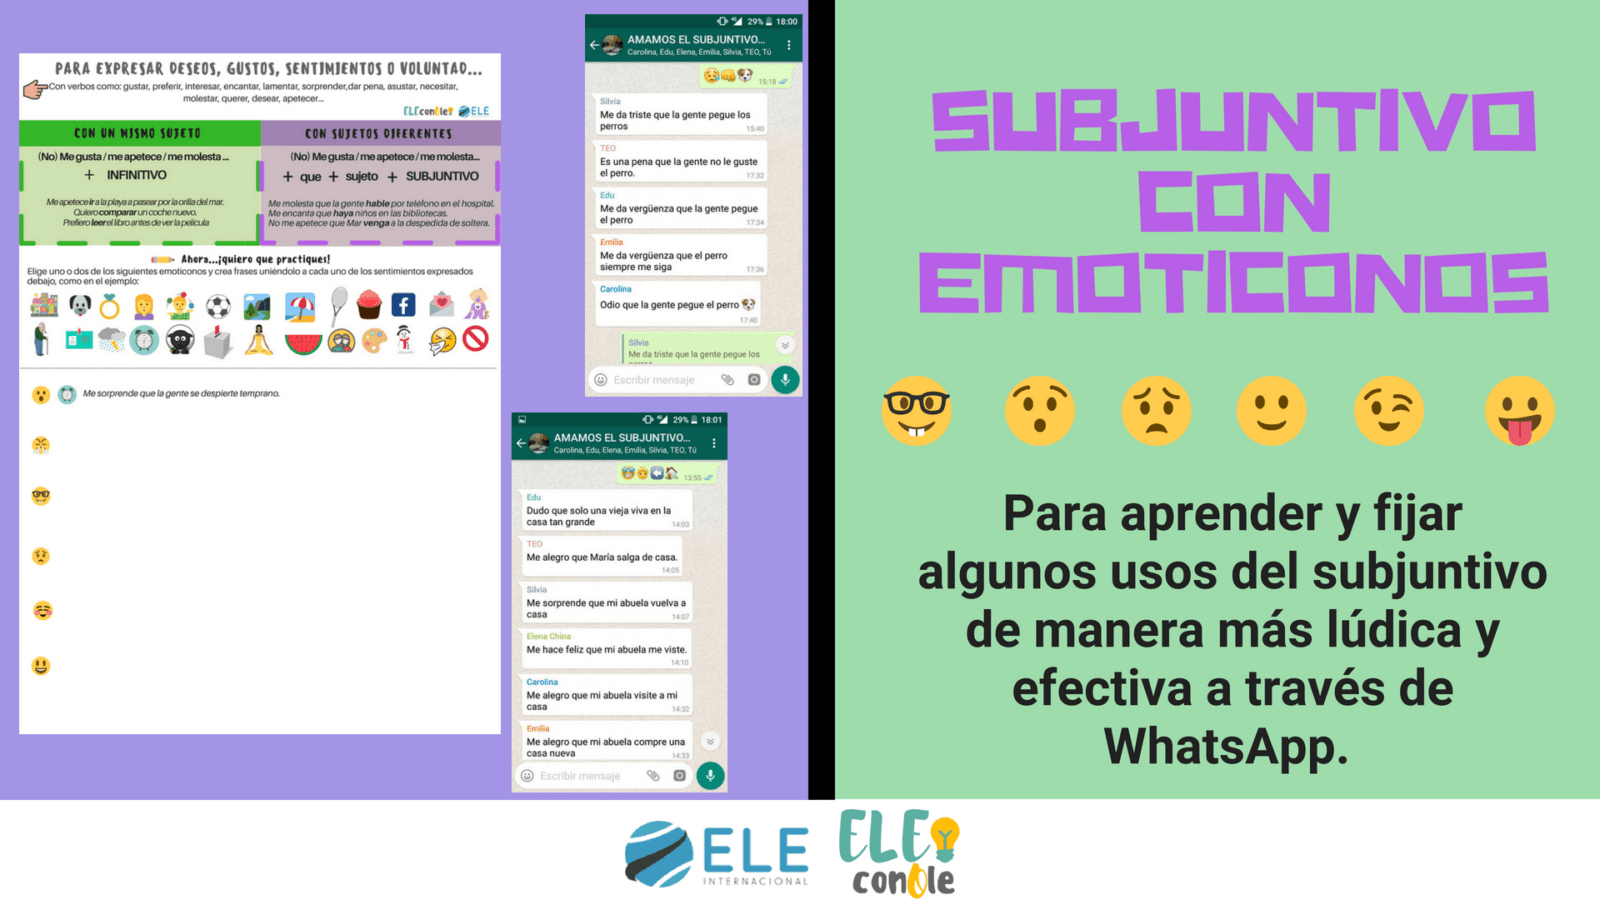 Fichas con emojis en clase de español. Trabajando con el subjuntivo. Gramática en clase de ELE. #claustrodeig #teachmoreSpanish